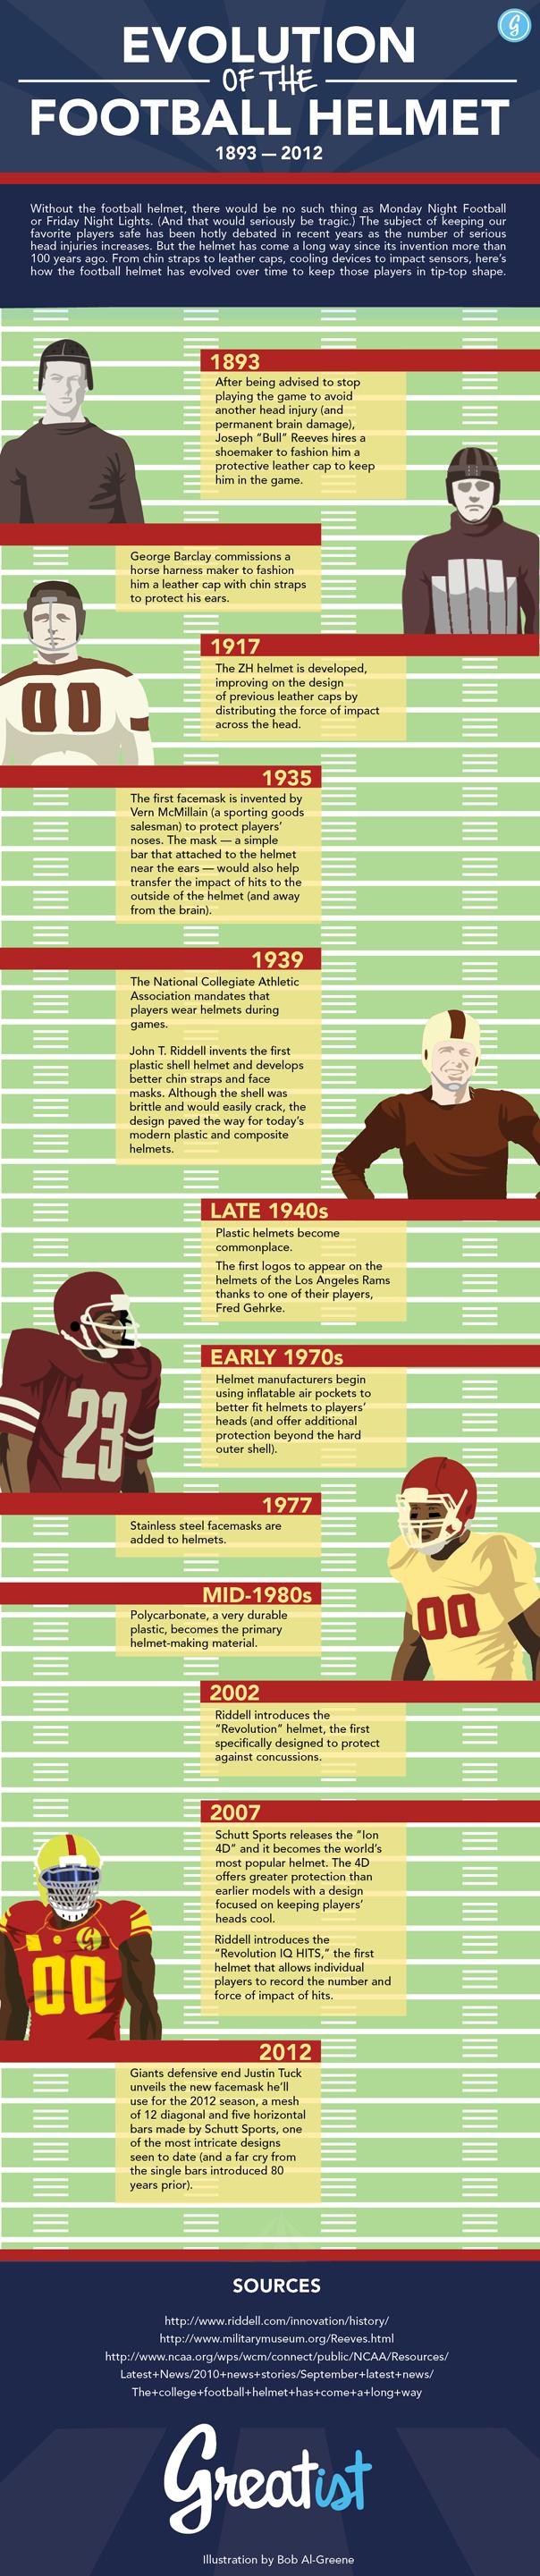 Historic Timeline of the Football Helmet